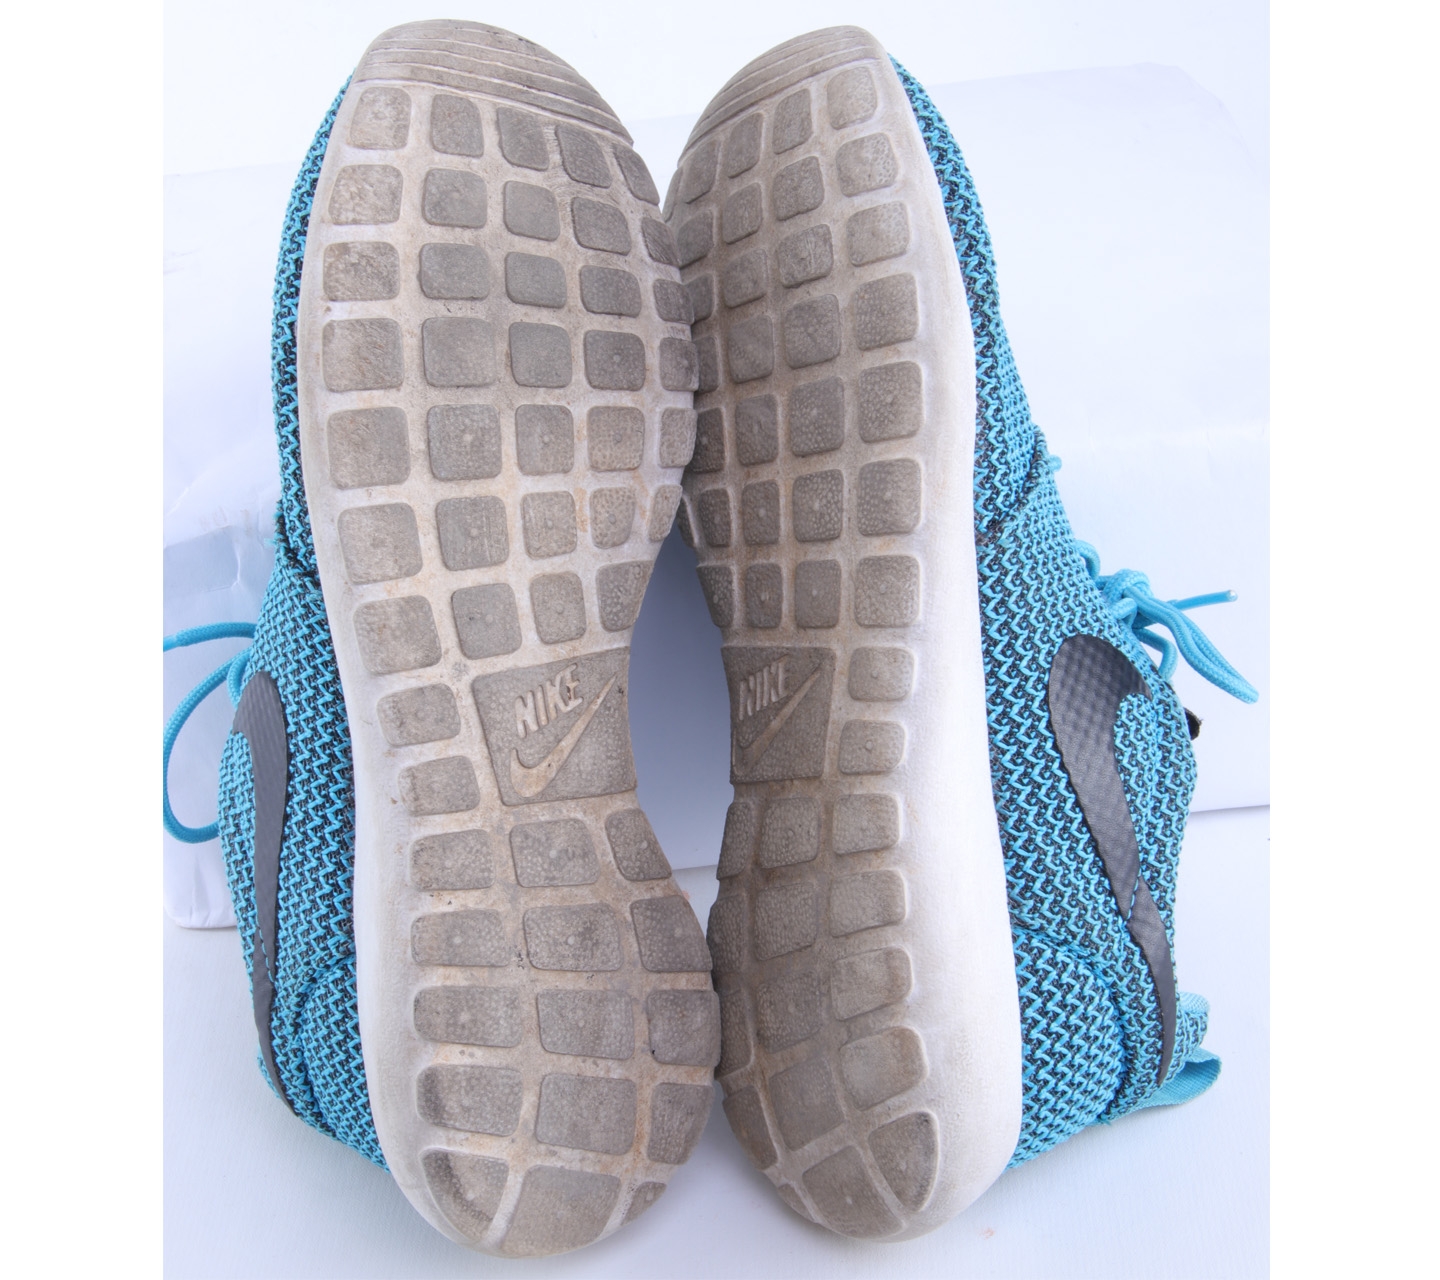 Nike Blue Sneakers